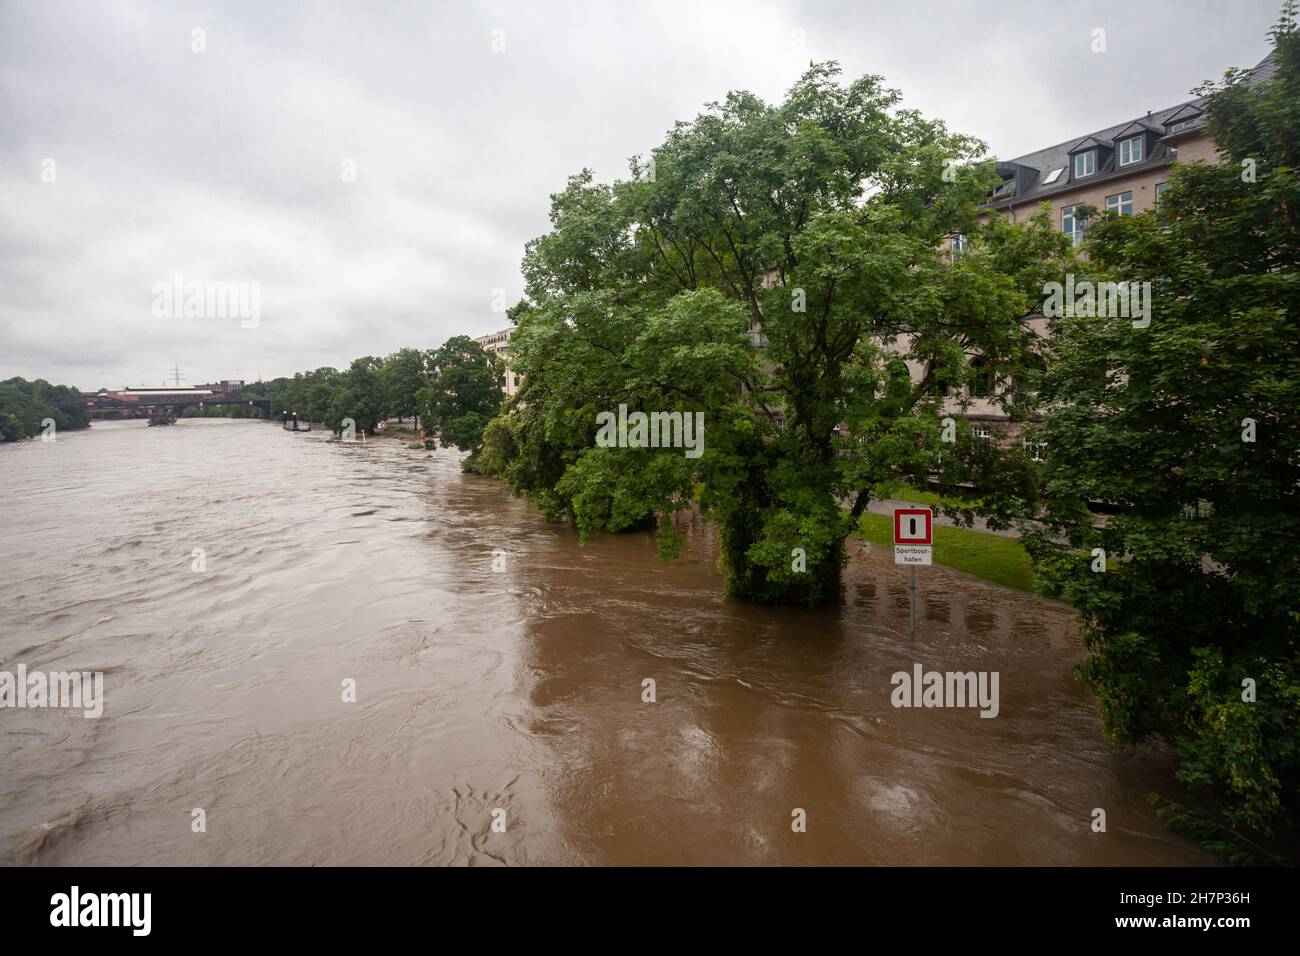 Germania - 16.7.2021: Inondazioni in Germania a causa di forti piogge Foto Stock